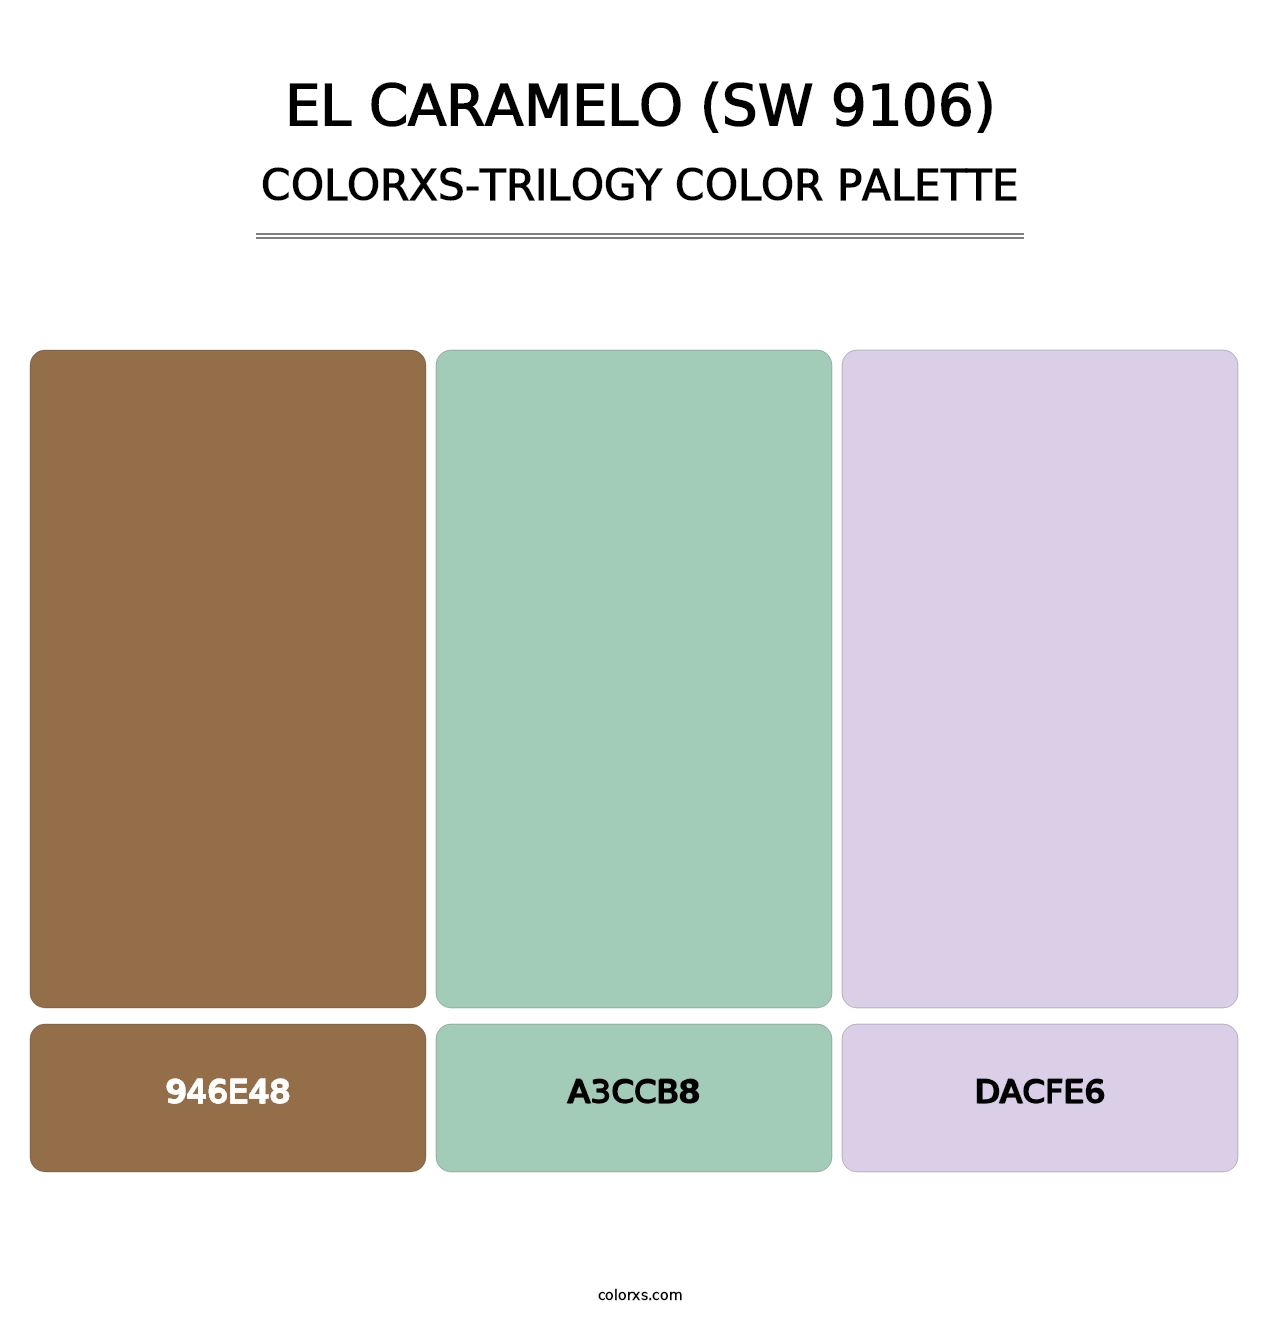 El Caramelo (SW 9106) - Colorxs Trilogy Palette